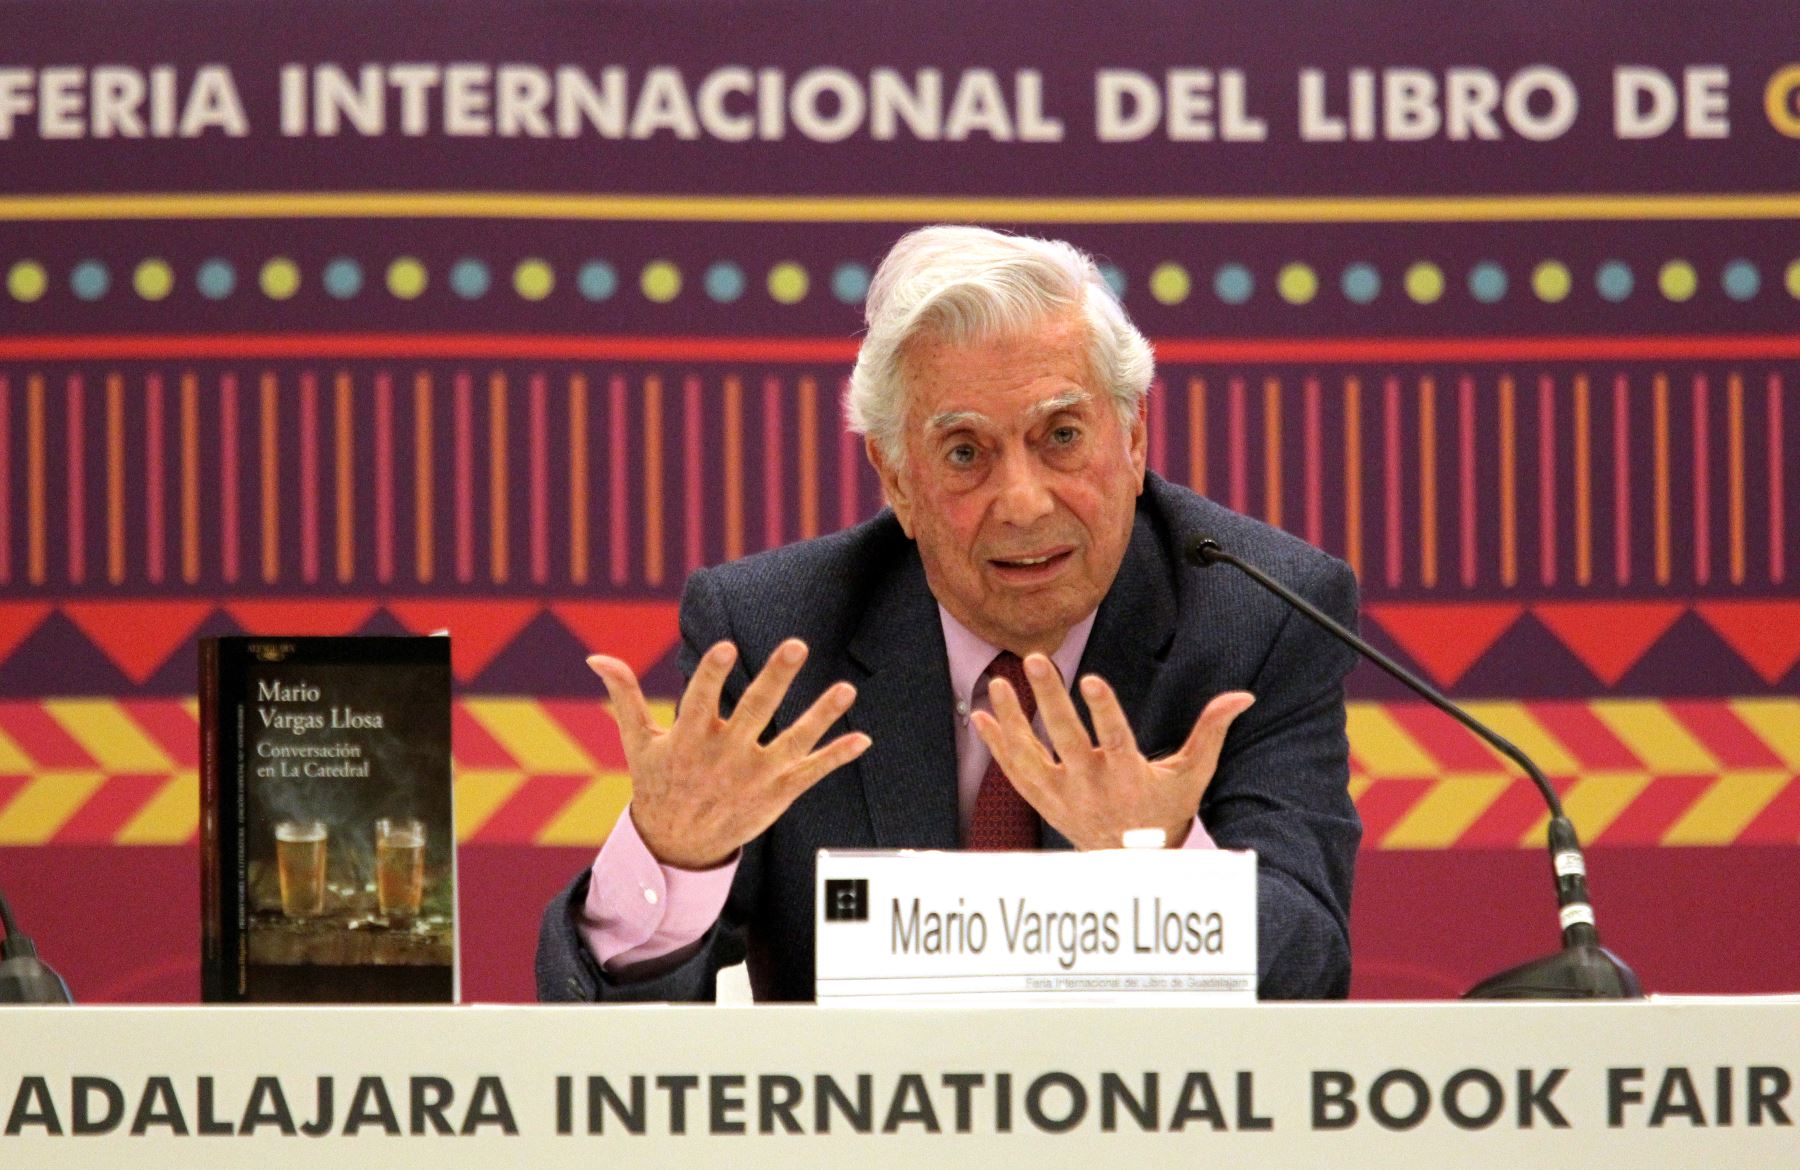 El nobel peruano Mario Vargas Llosa participa en la Feria Internacional del Libro de Guadalajara, donde presentó su novela "Tiempos recios". Foto: AFP